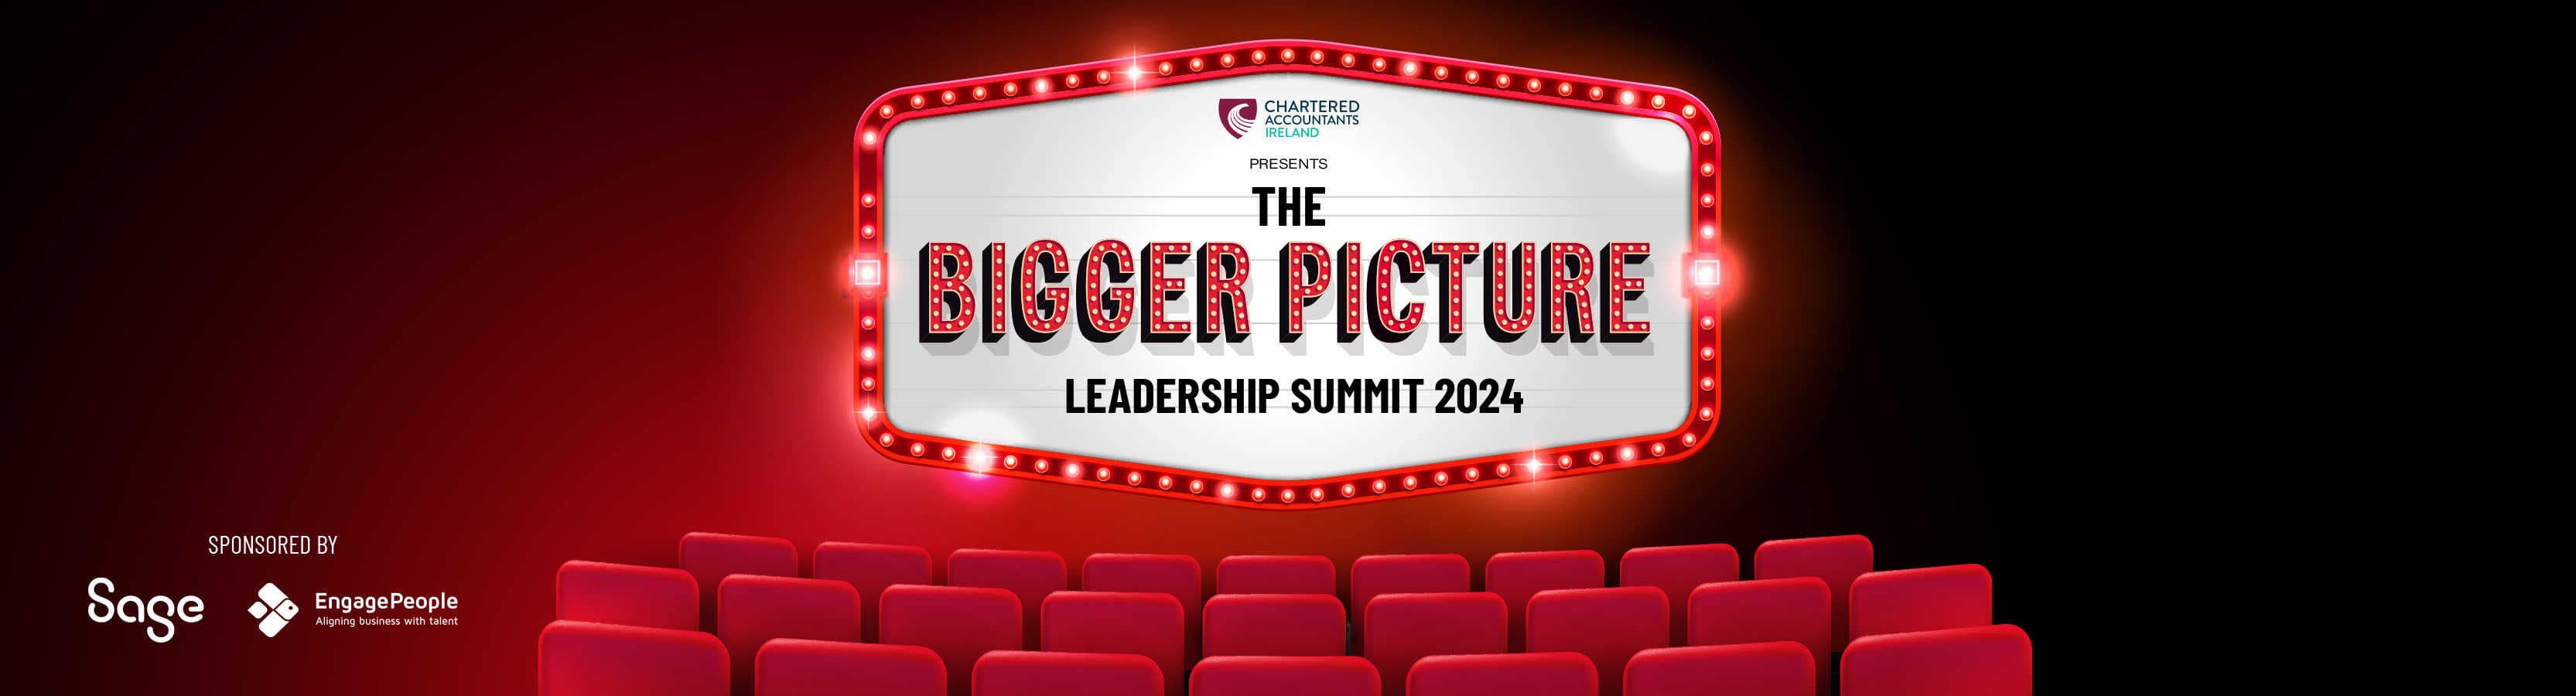 Leadership summit 2024